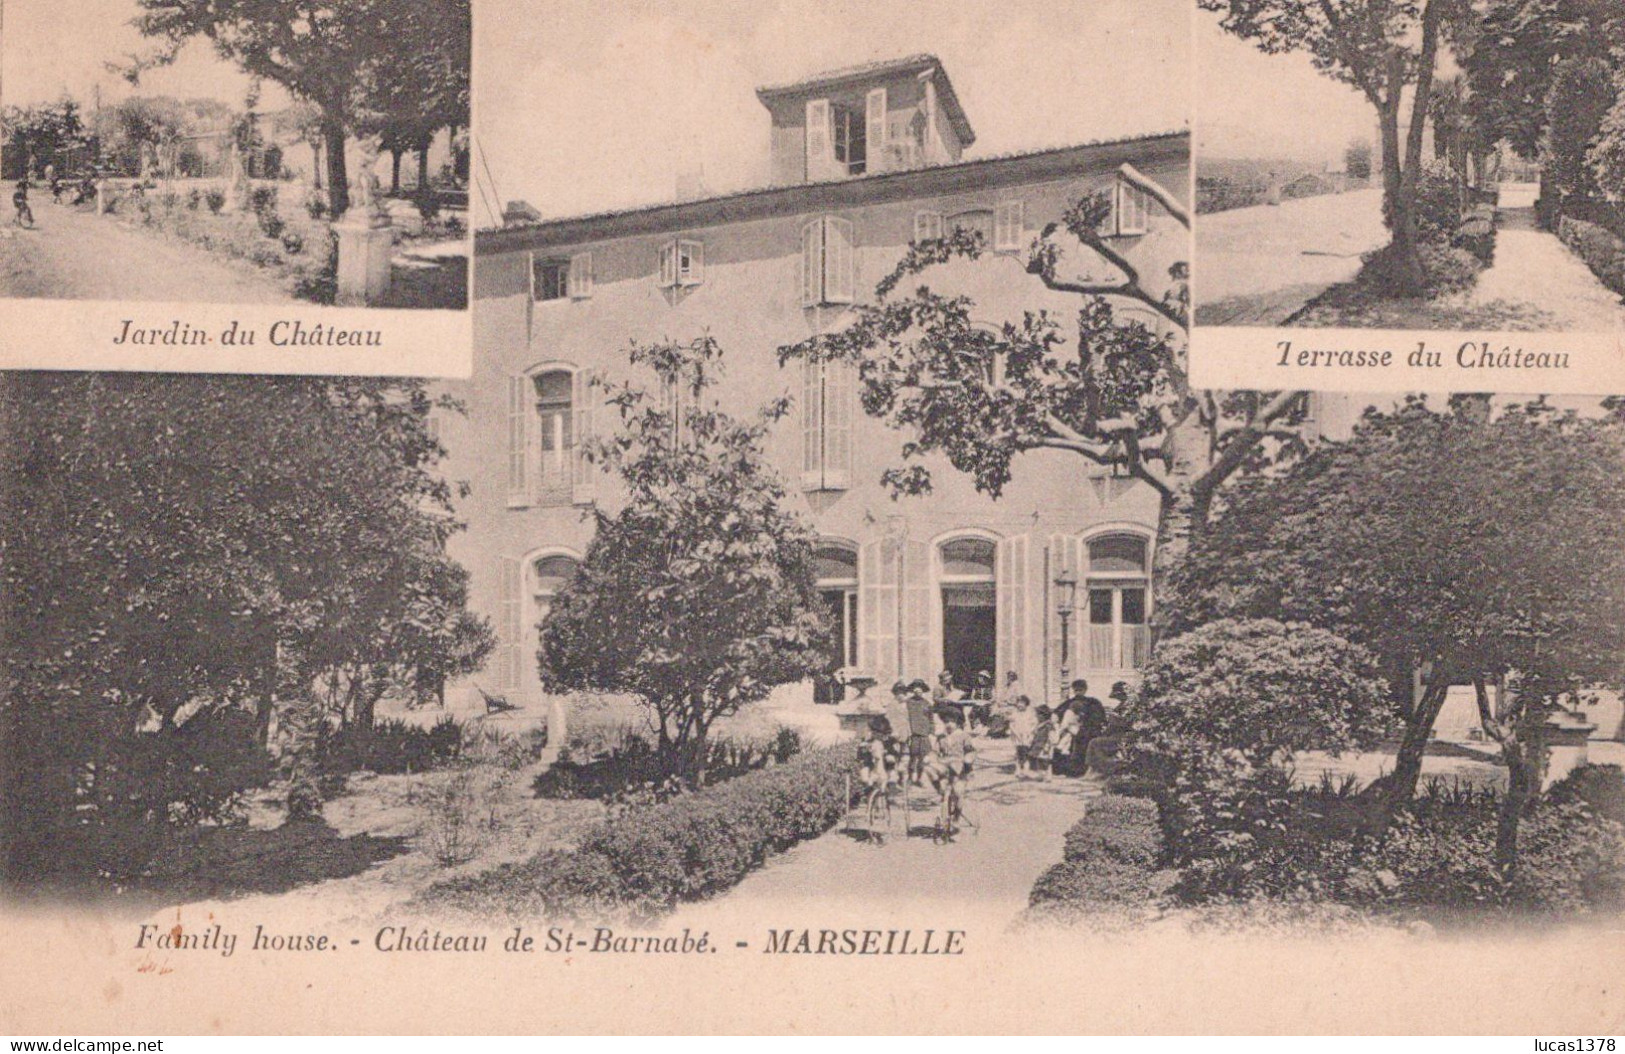 13 / MARSEILLE / FAMILY HOUSE / CHATEAU DE SAINT BARNABE - Saint Barnabé, Saint Julien, Montolivet